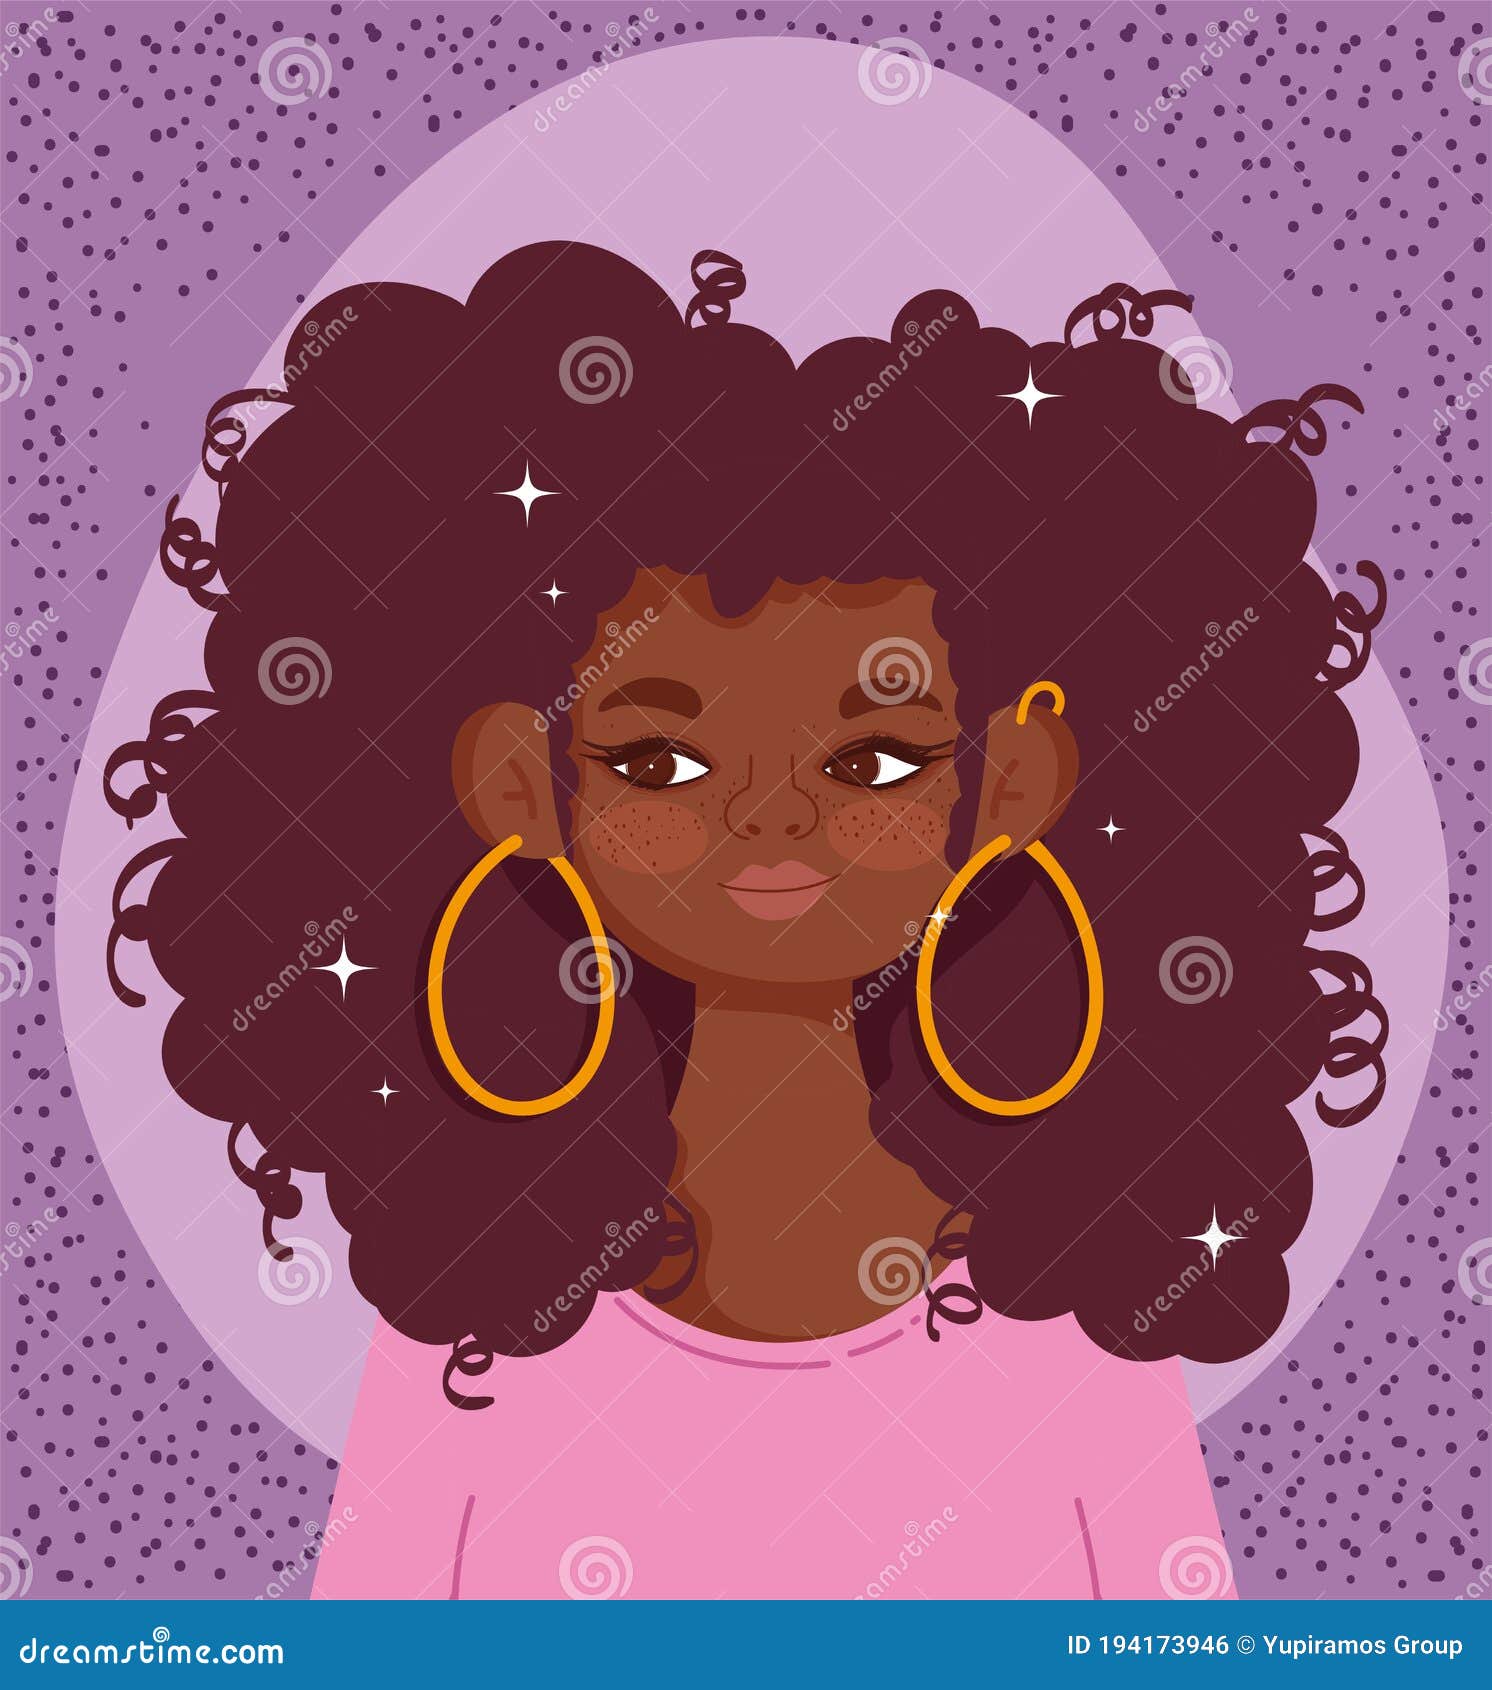 With black cartoon girl afro hair Cartoon 'The